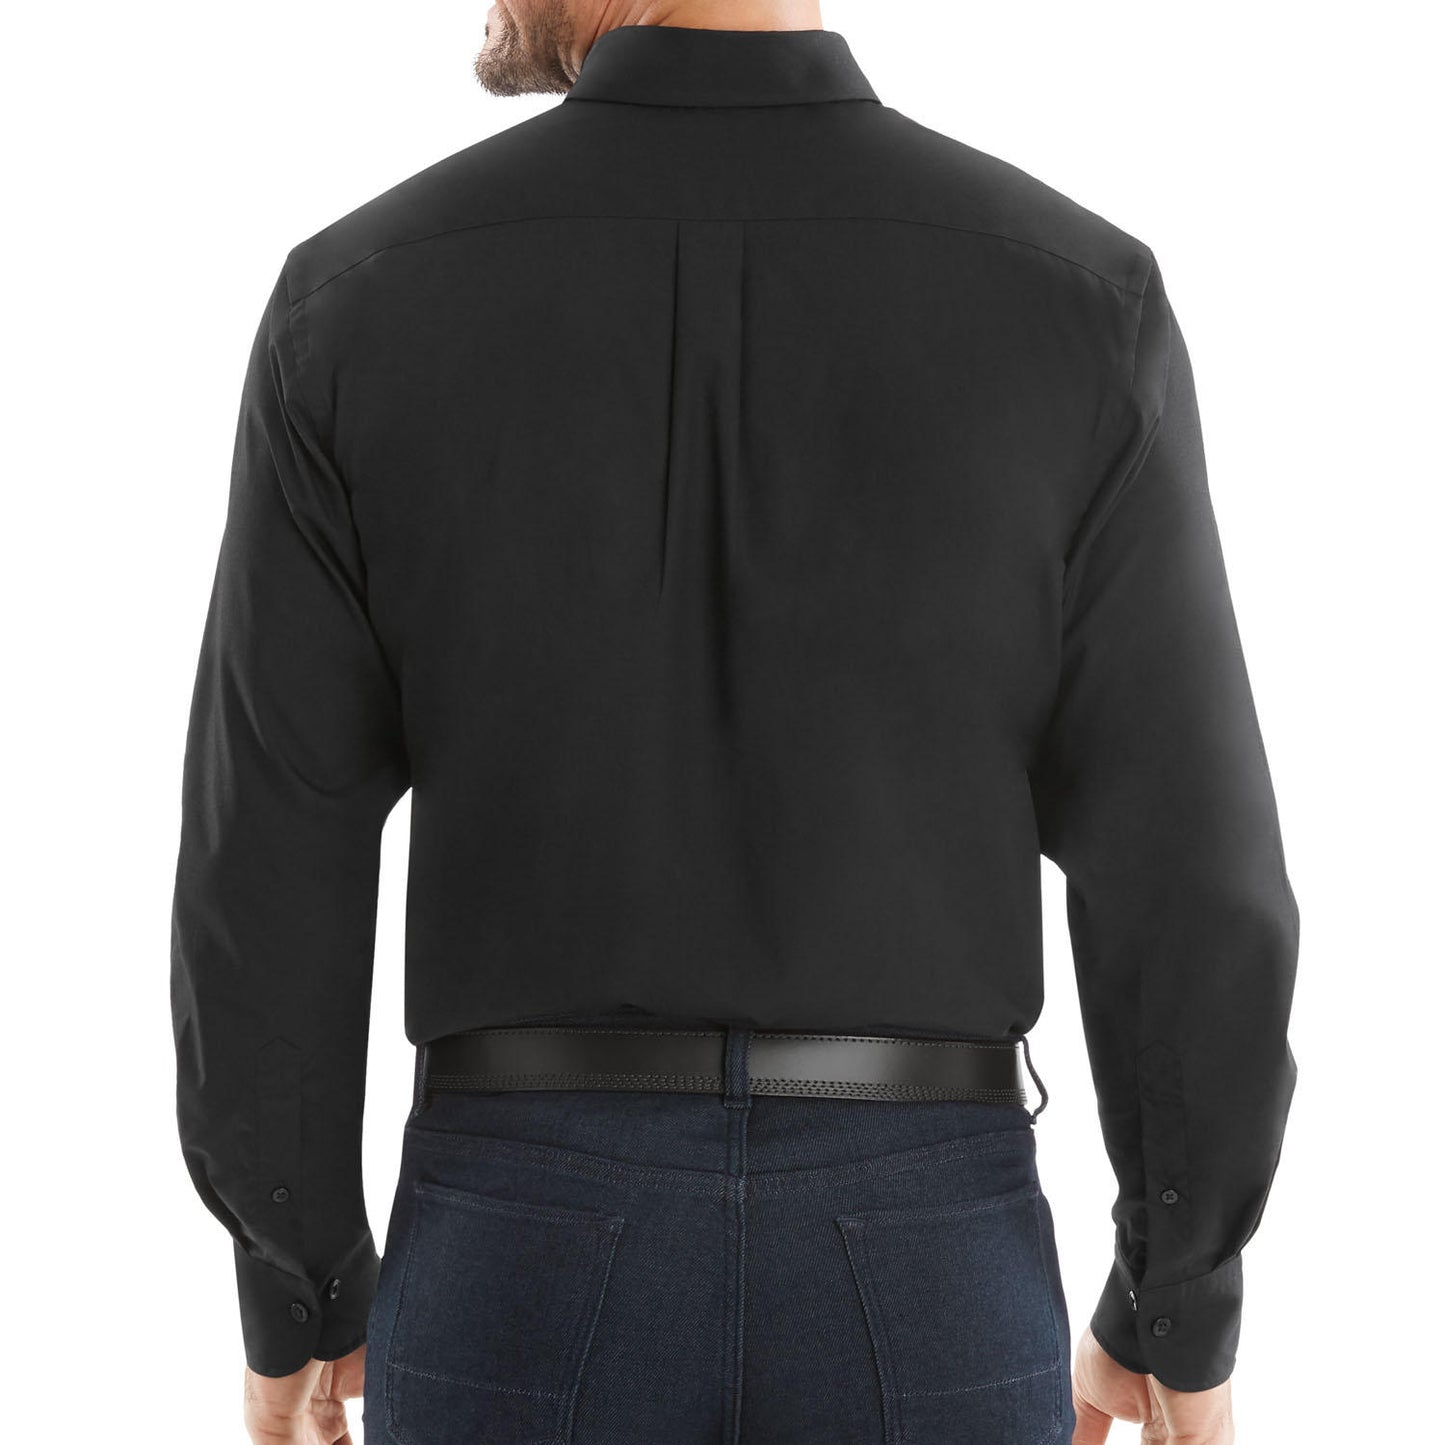 Member's Mark Men's Woven Poplin Shirt.. Solid Black